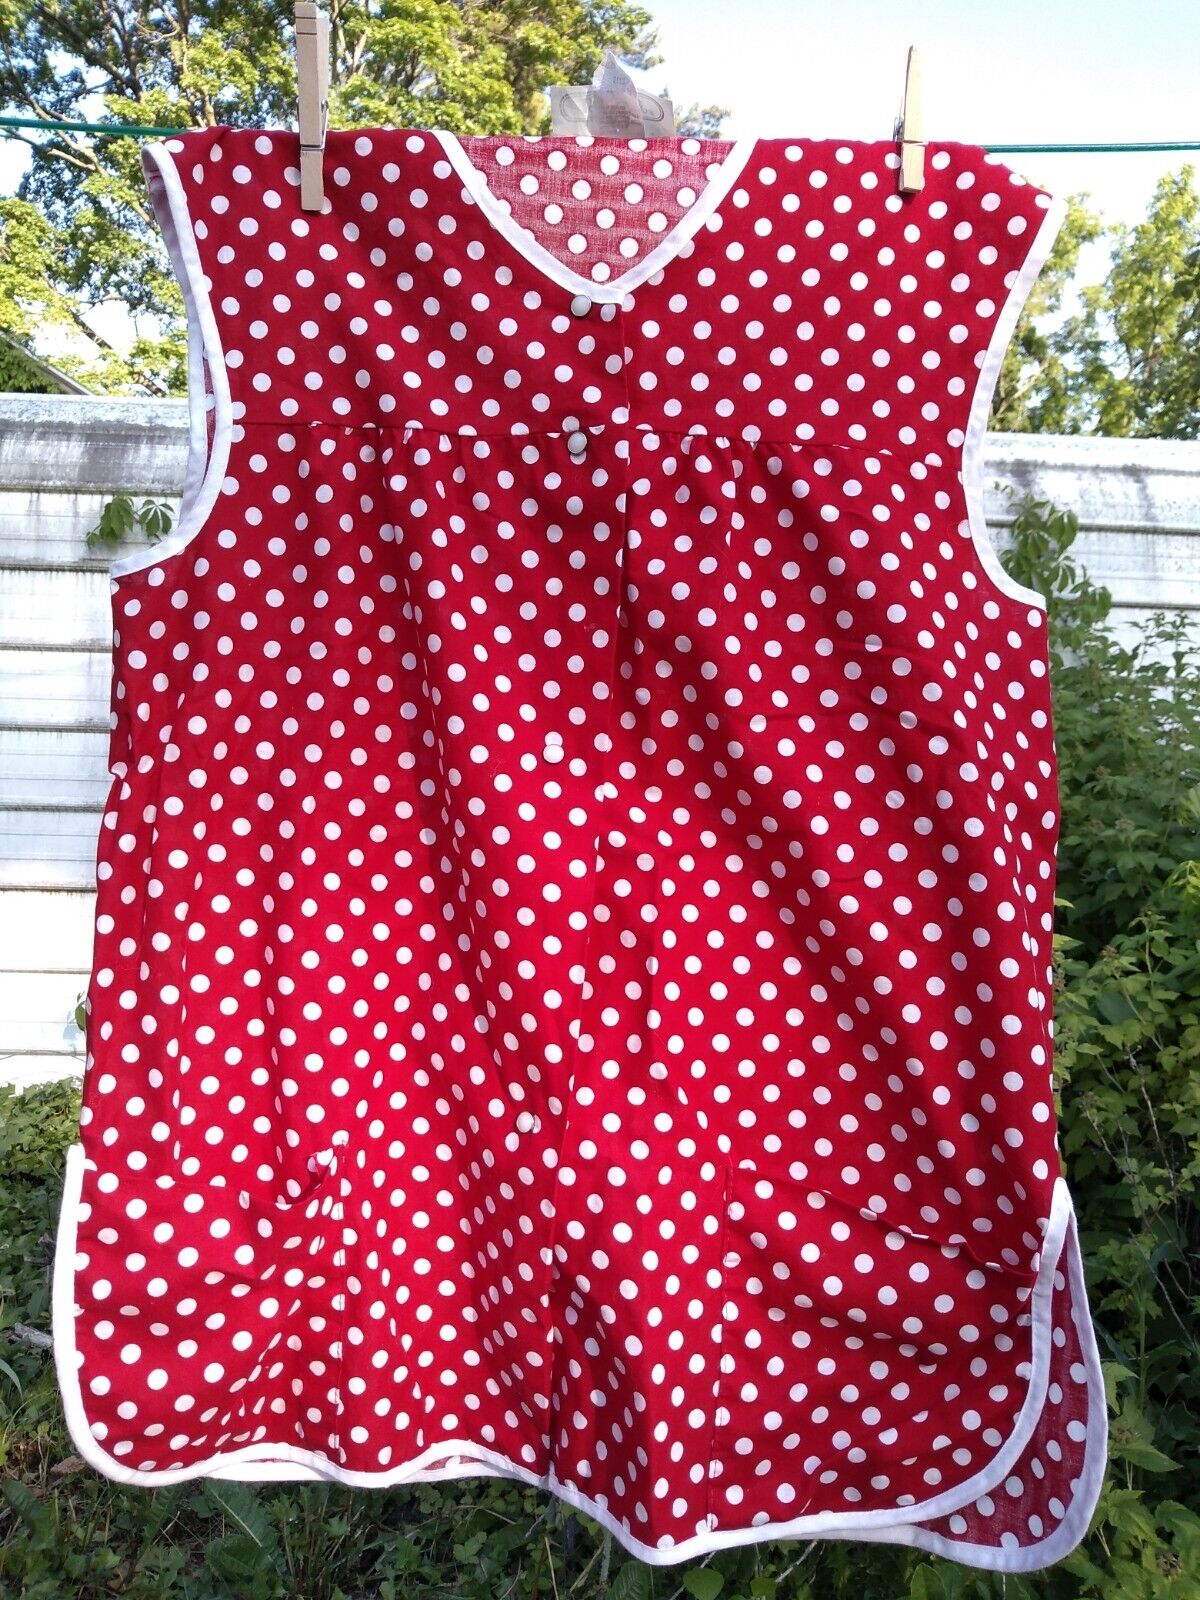 izzys apron usa vintage polka dot red and white 